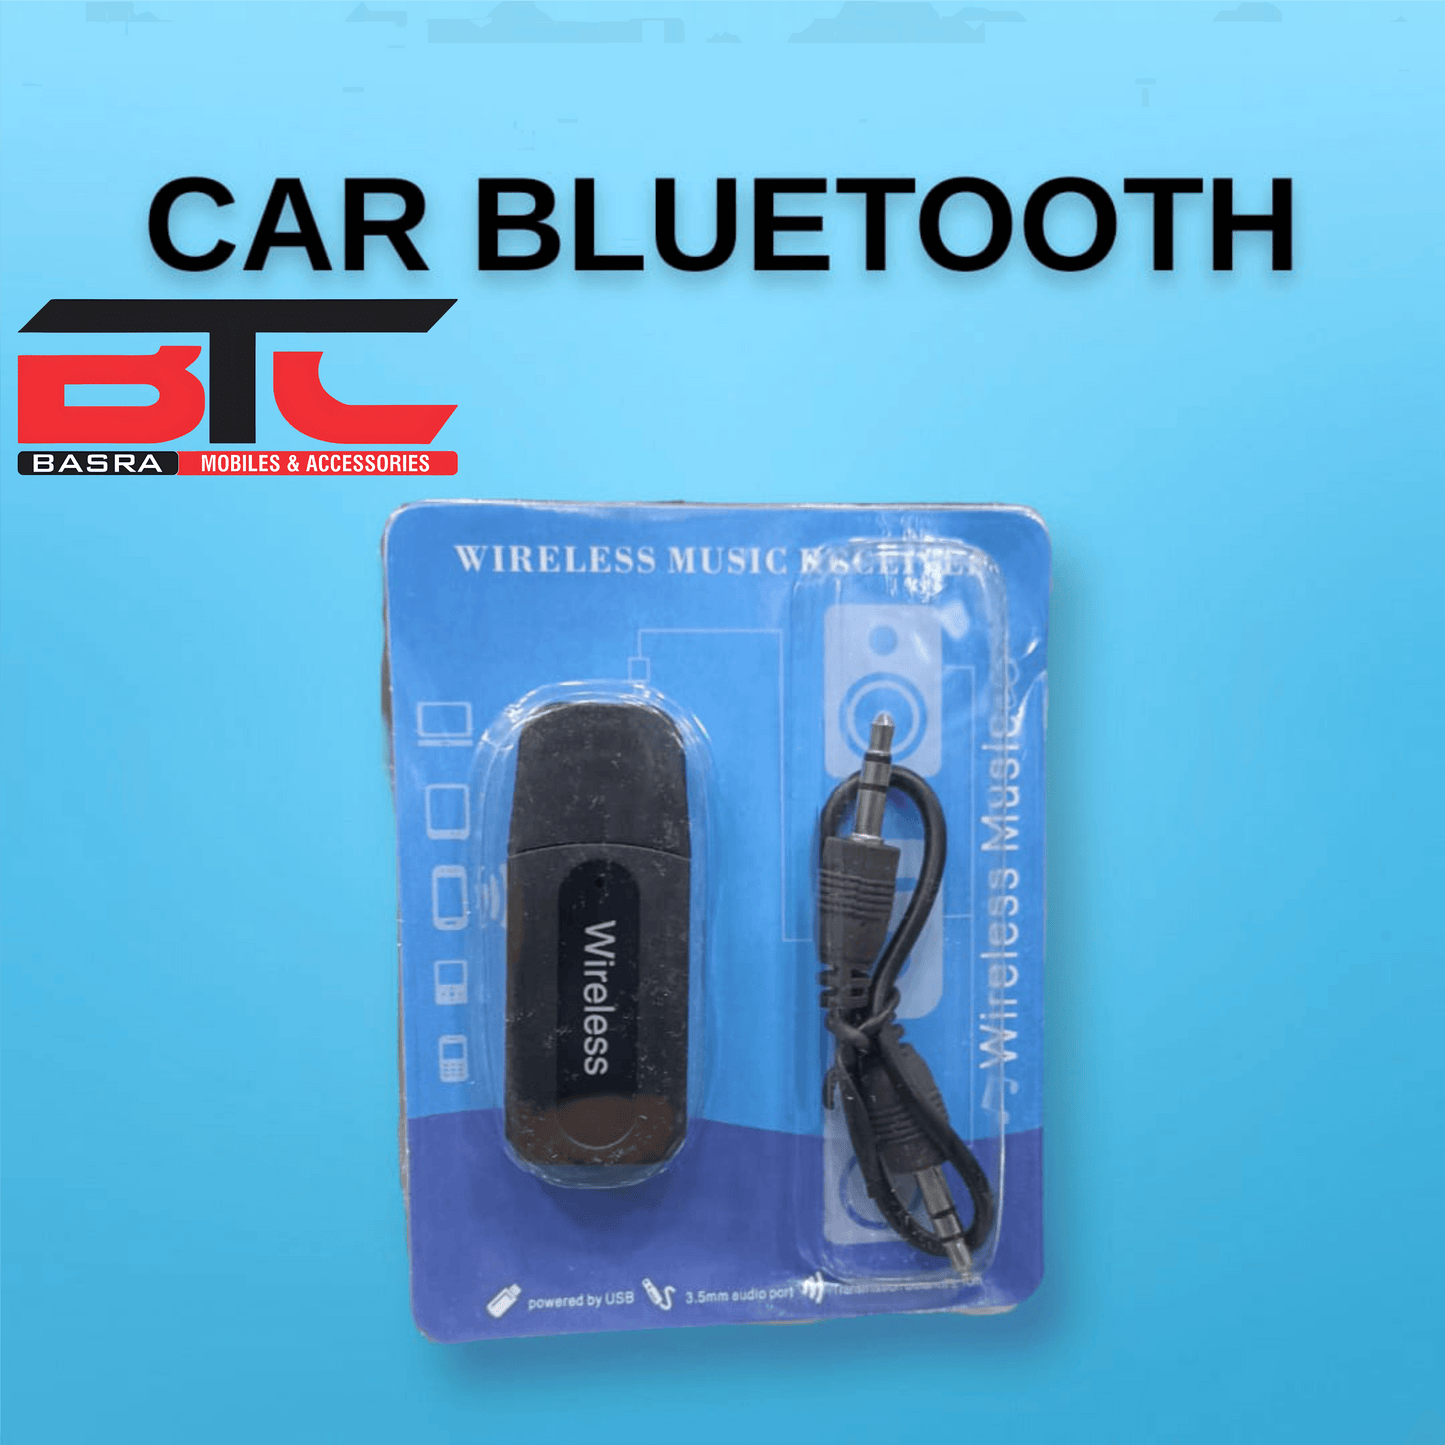 Car Bluetooth - Basra Mobile Center